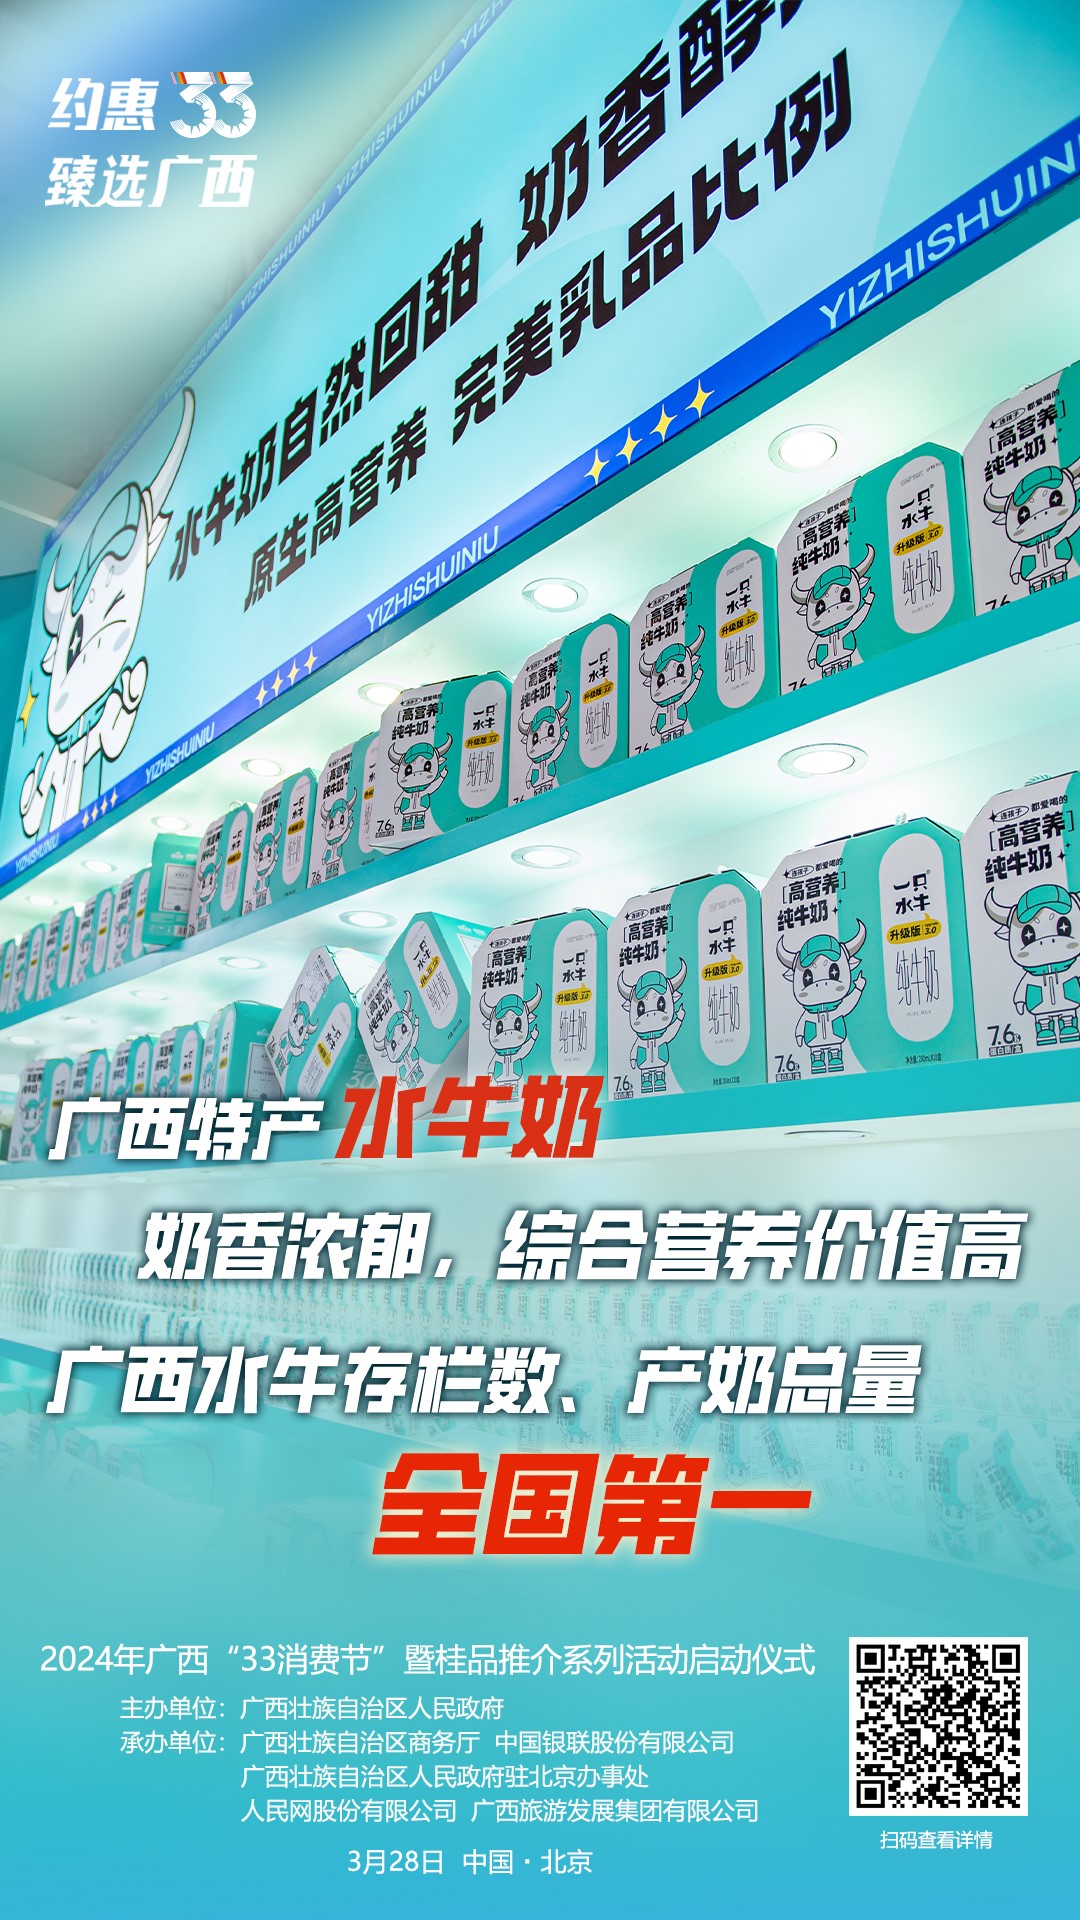 Se celebra en Beijing la ceremonia de lanzamiento del Festival del Consumidor 